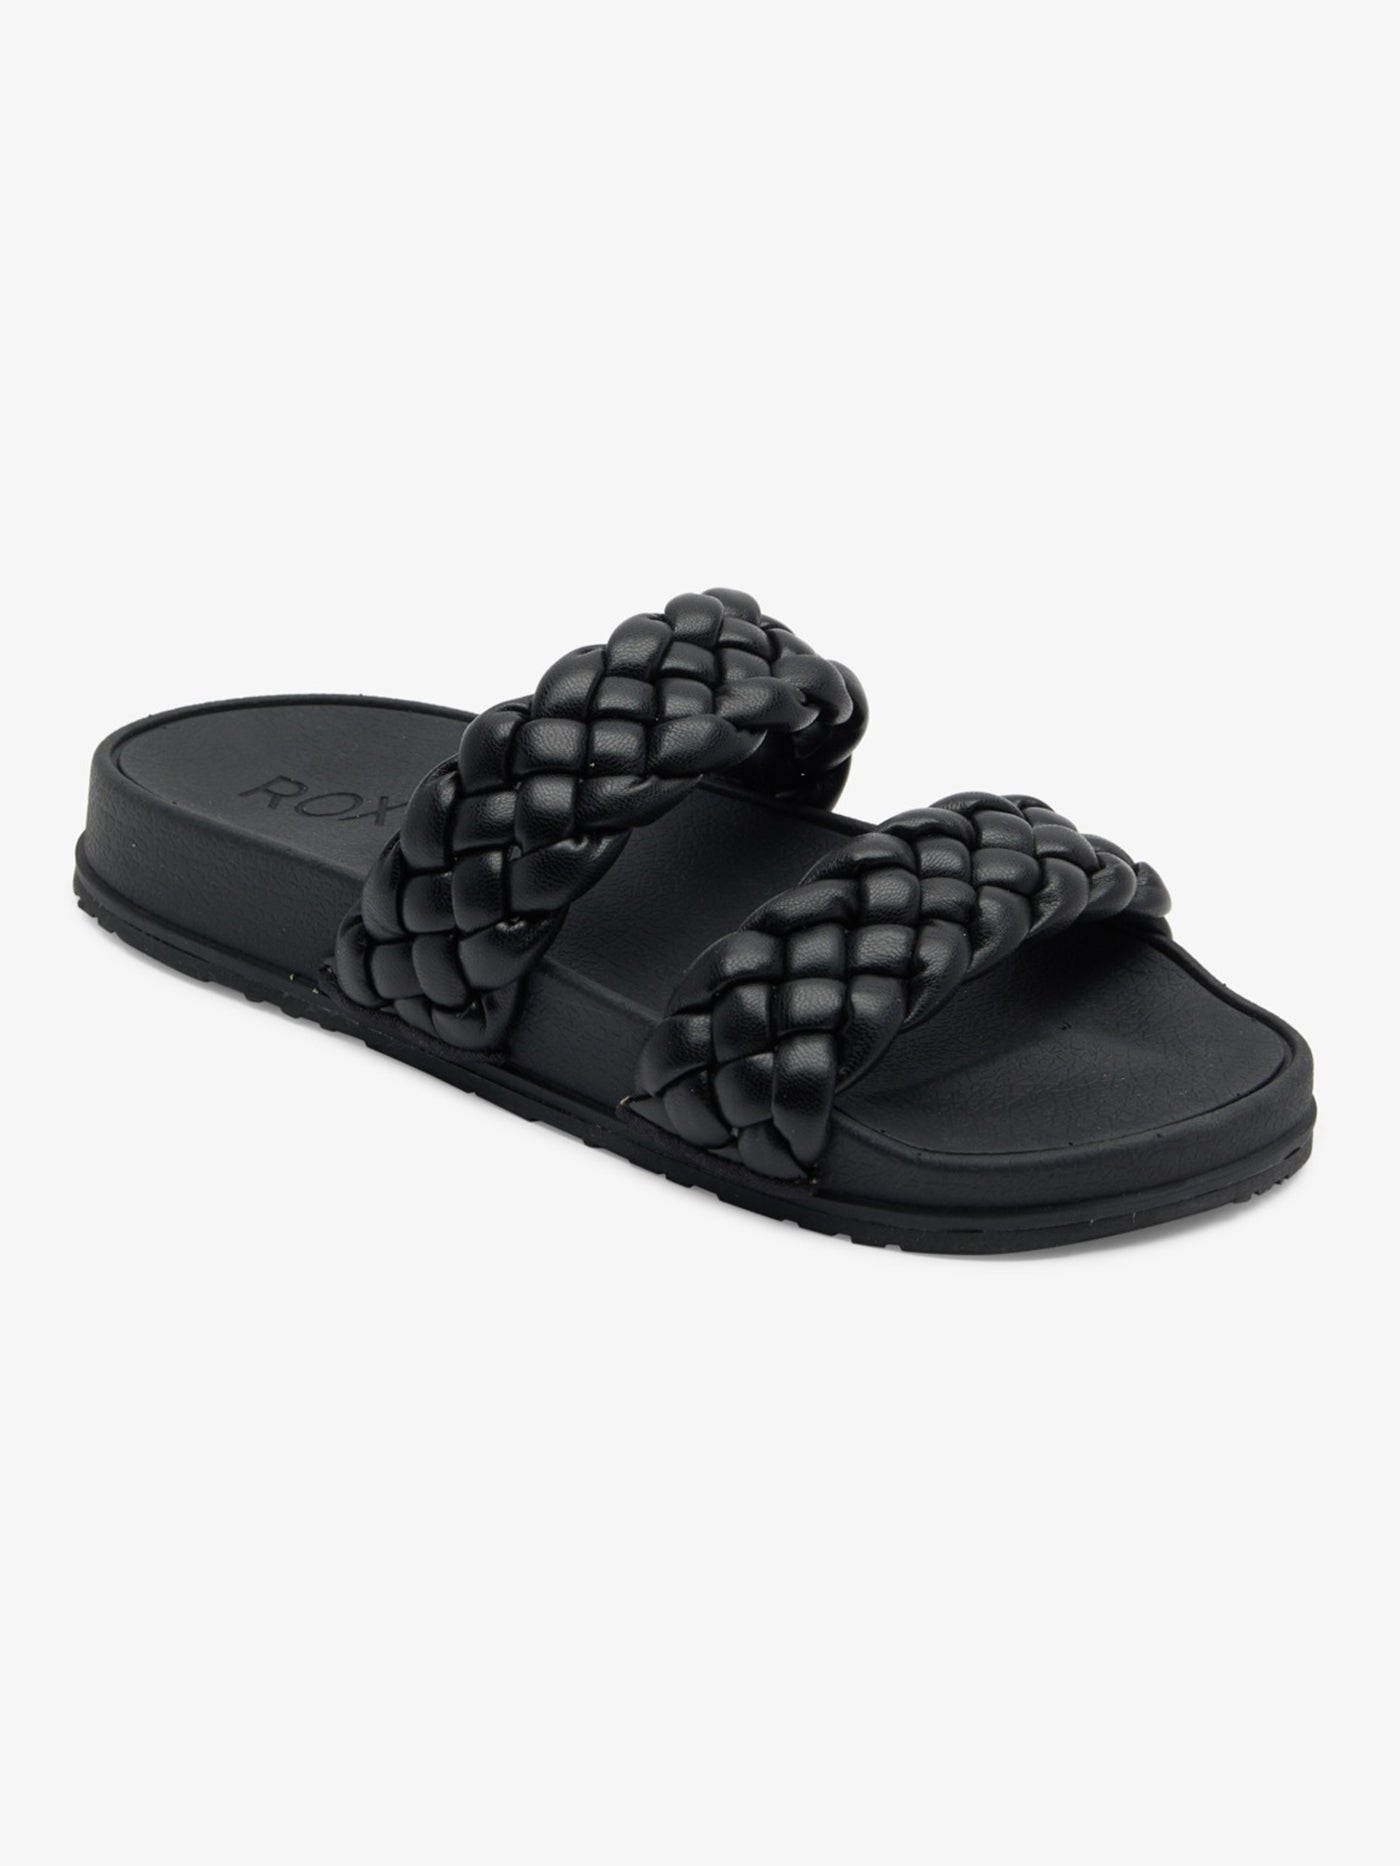 Roxy Slippy Braided Black Sandals